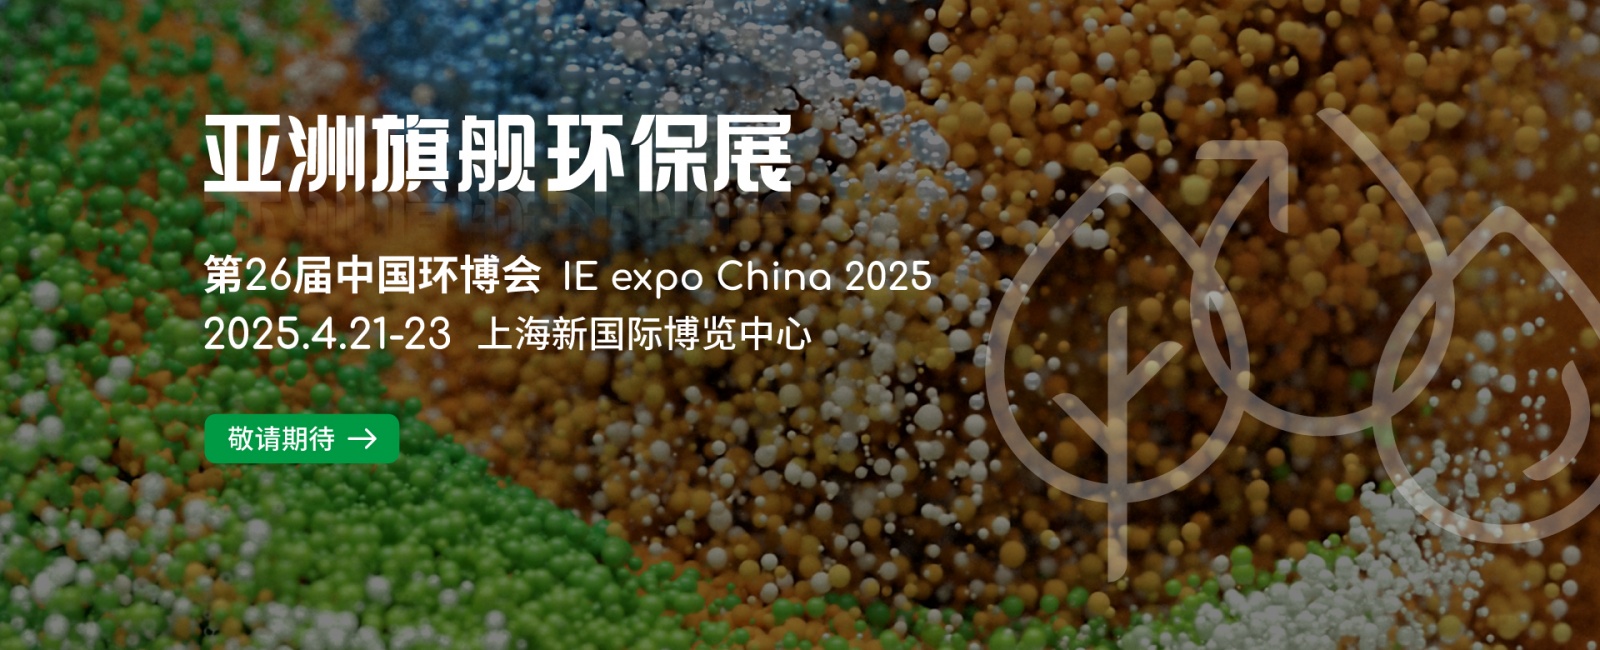 2025中国环博会|上海环博会